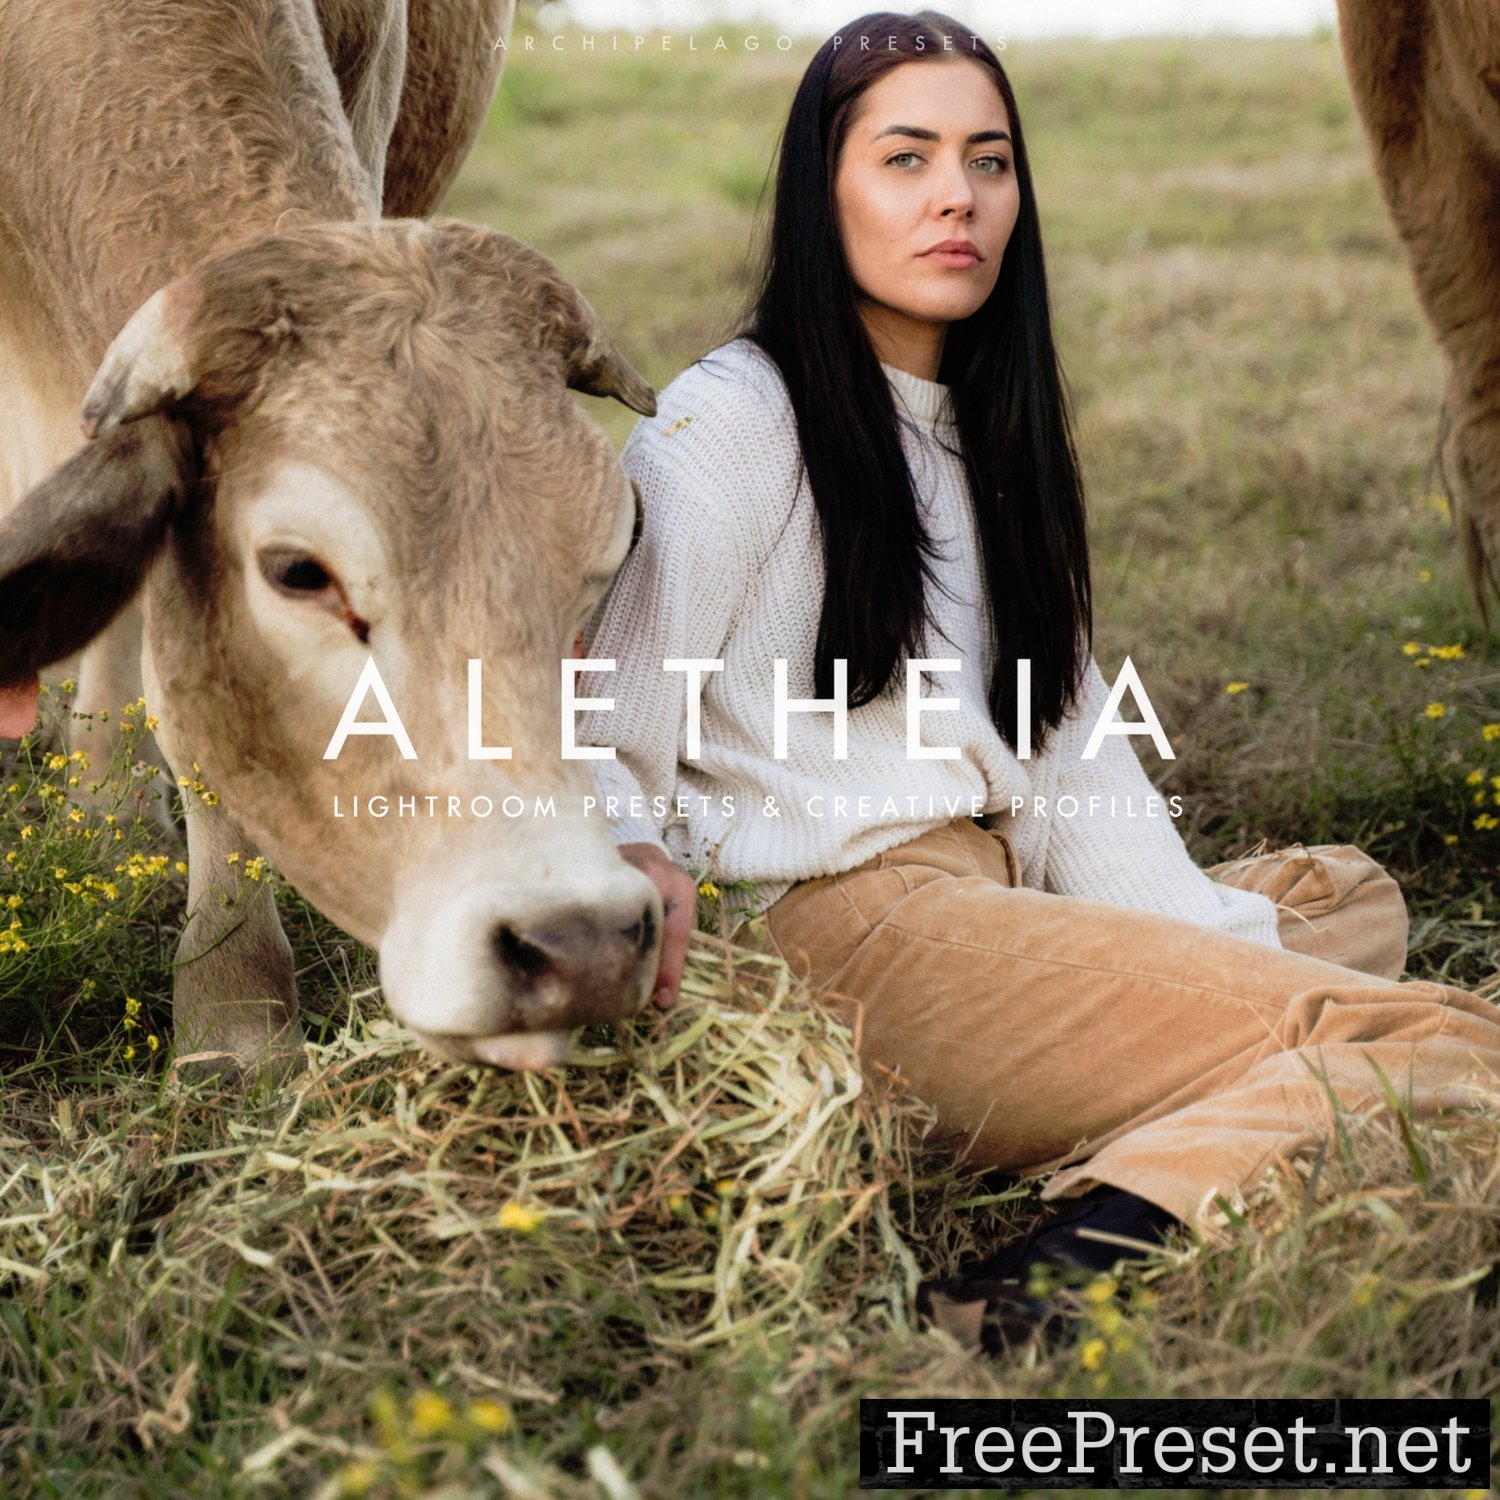 Archipelago - Aletheia Presets